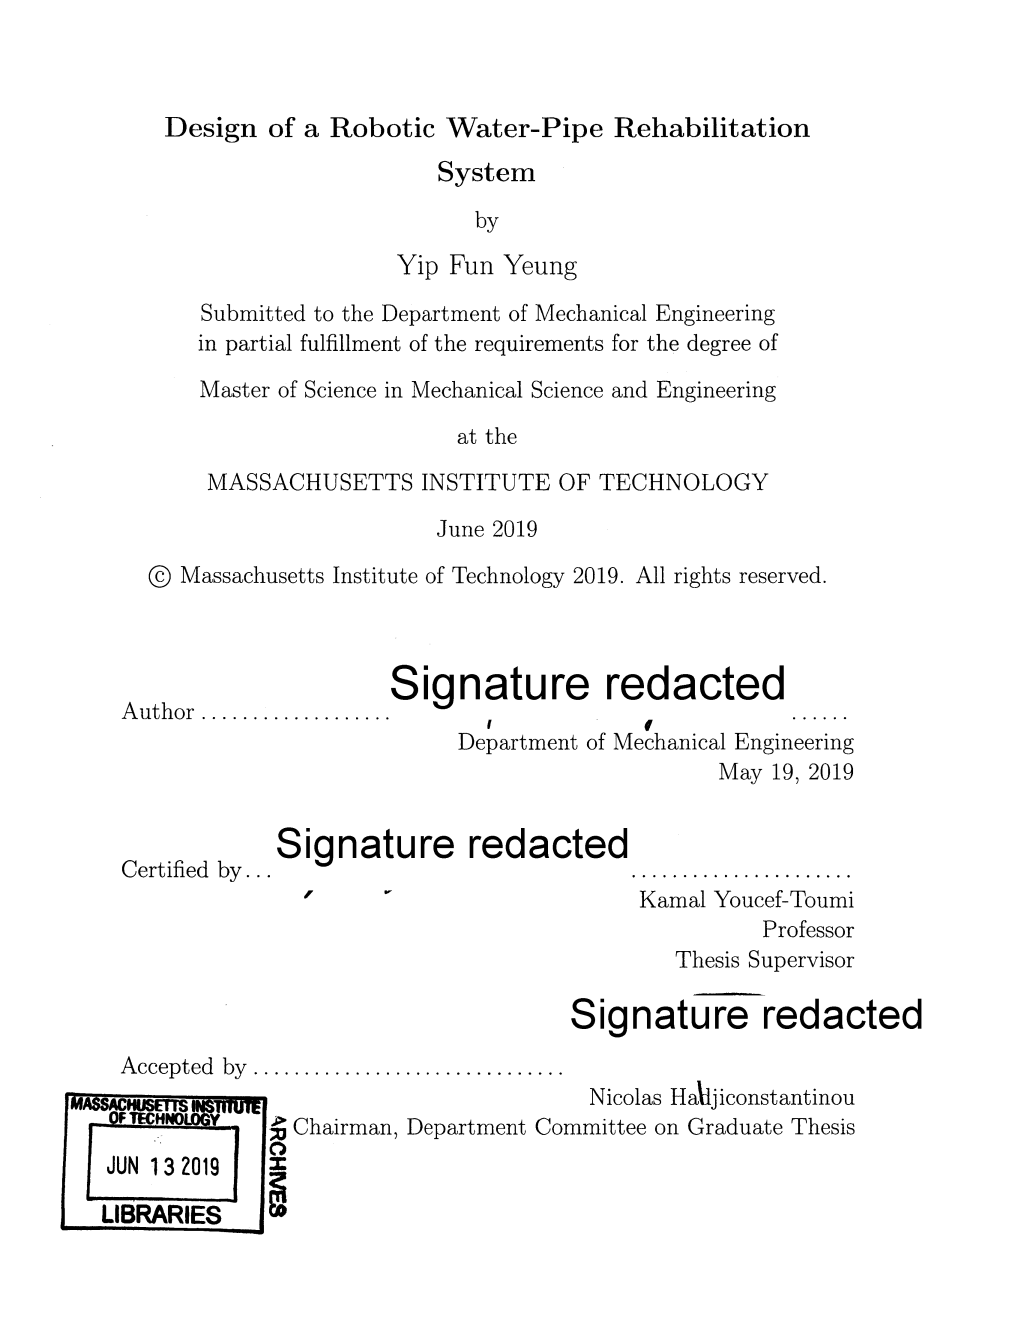 Sigatue Edacted Signature Redacted